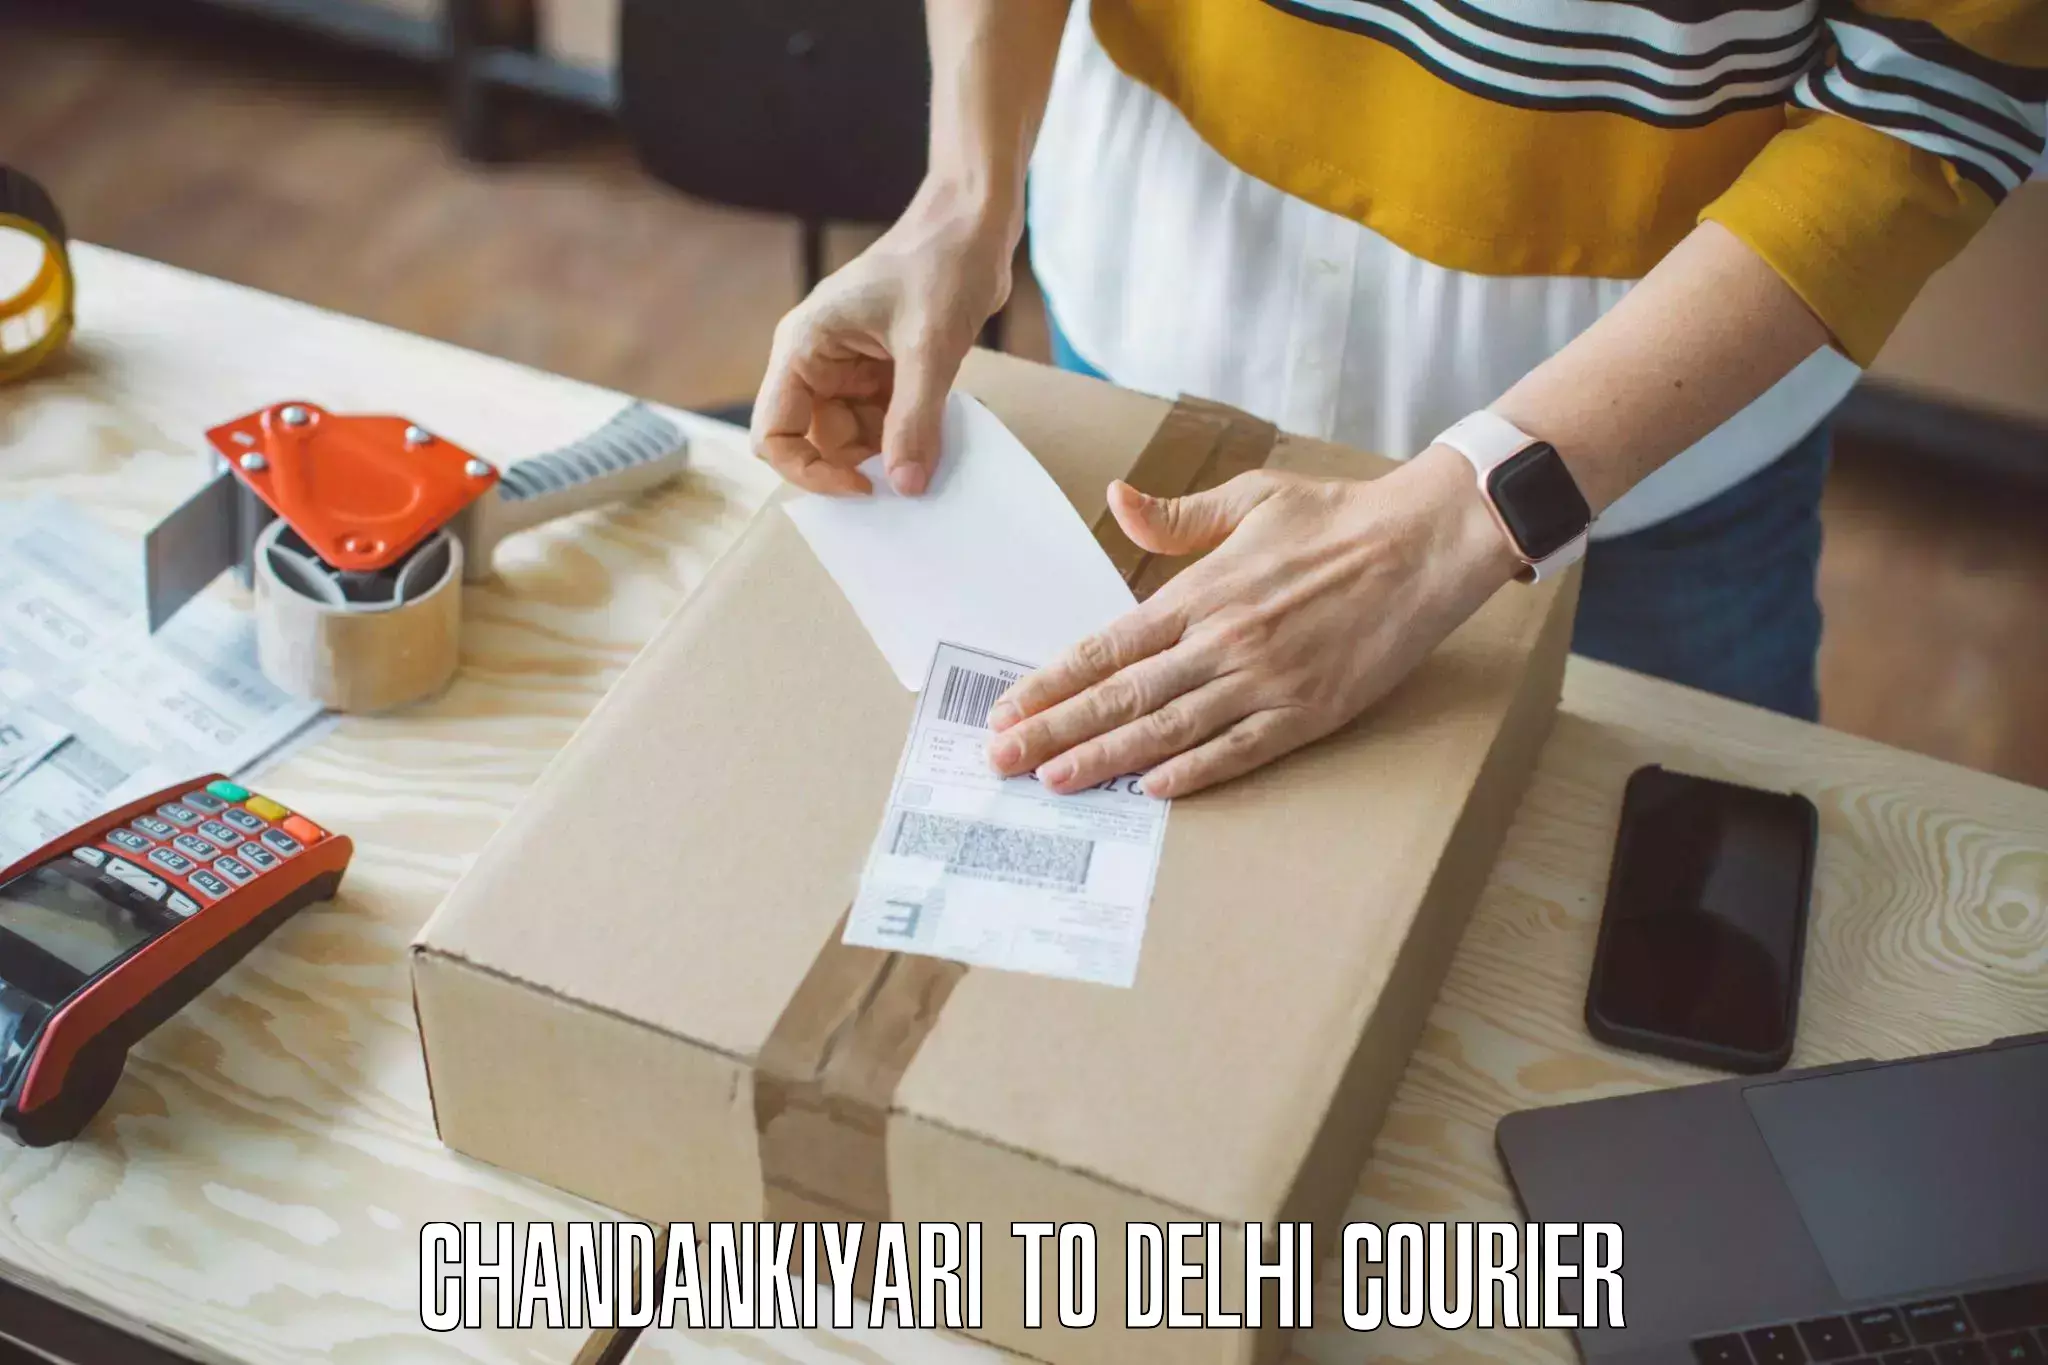 Efficient moving and packing Chandankiyari to Delhi